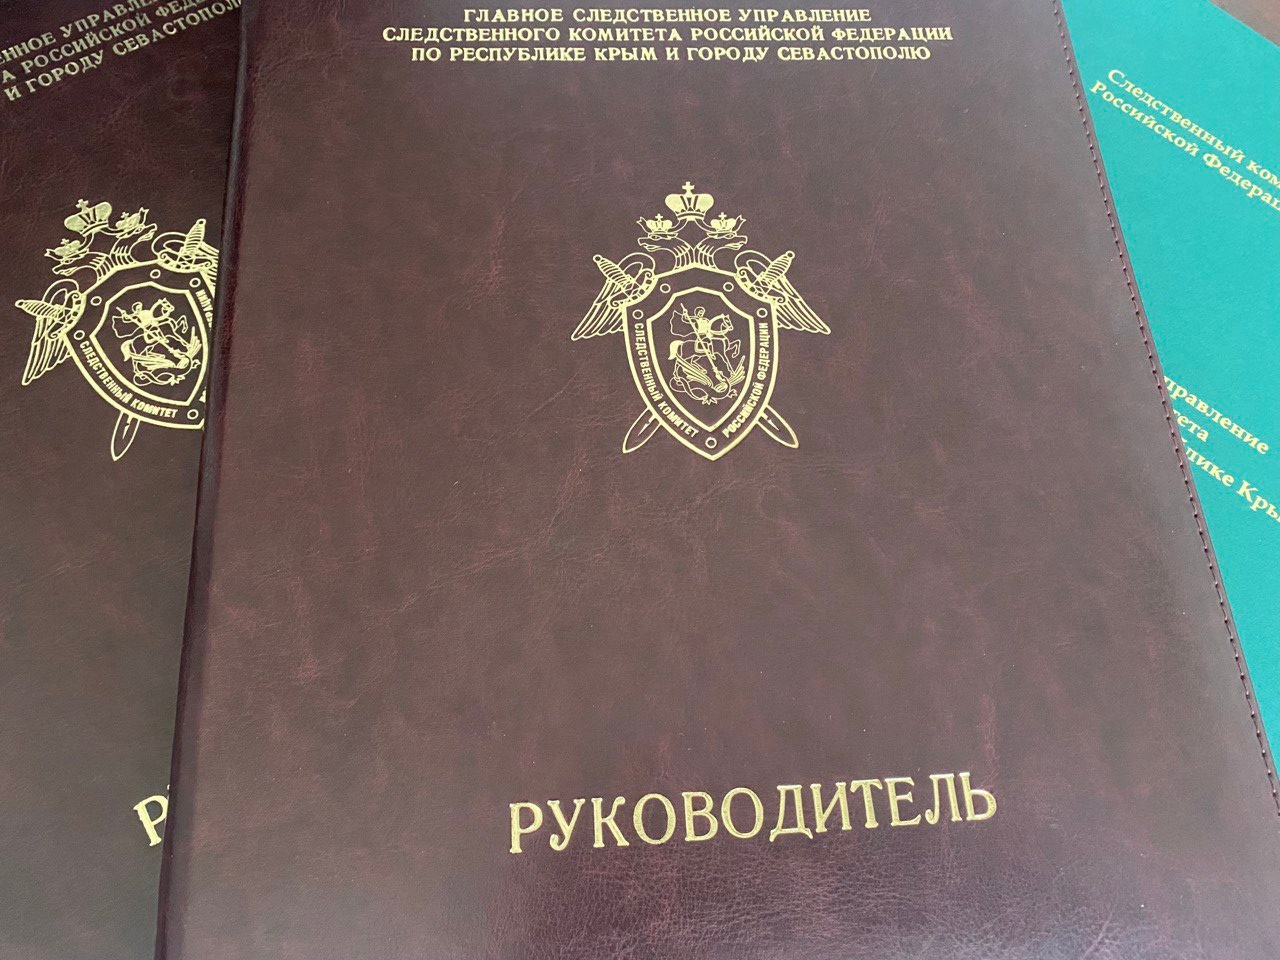 Члена Общественной палаты Крыма хотят заключить под стражу по делу о смертельном ДТП